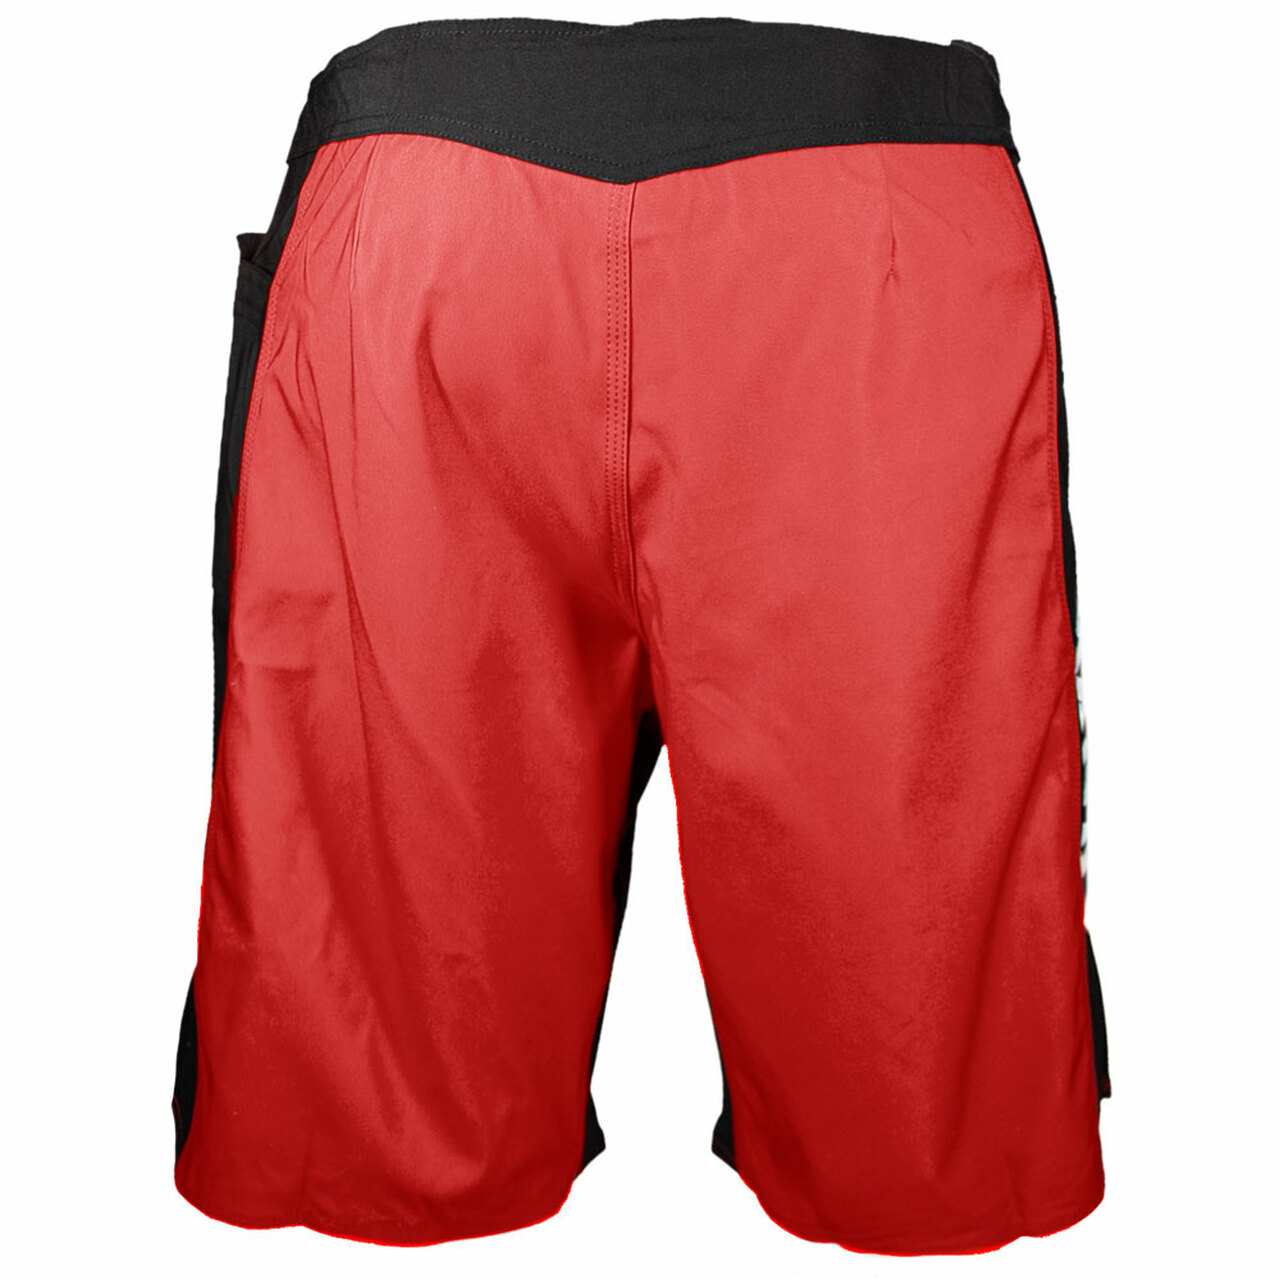 Krav Maga Black-Ops-One Shorts – Red/Black – Krav Maga Worldwide ...